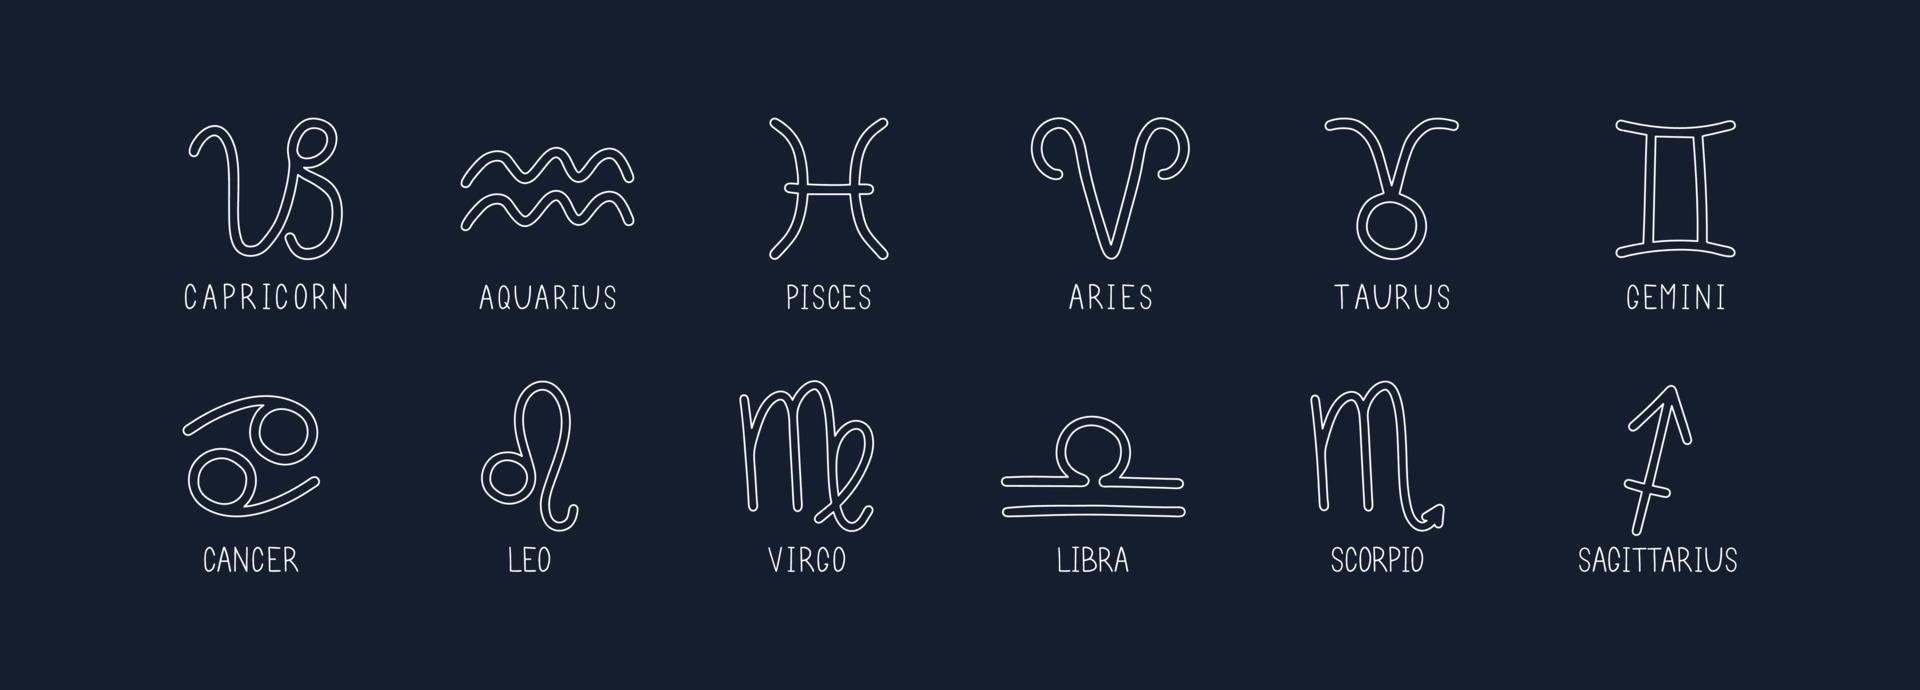 conjunto de vectores de signos del zodiaco. símbolos 12 signos con inscripciones en el cielo azul. imágenes vectoriales de signos del zodiaco para astrología y horóscopos.